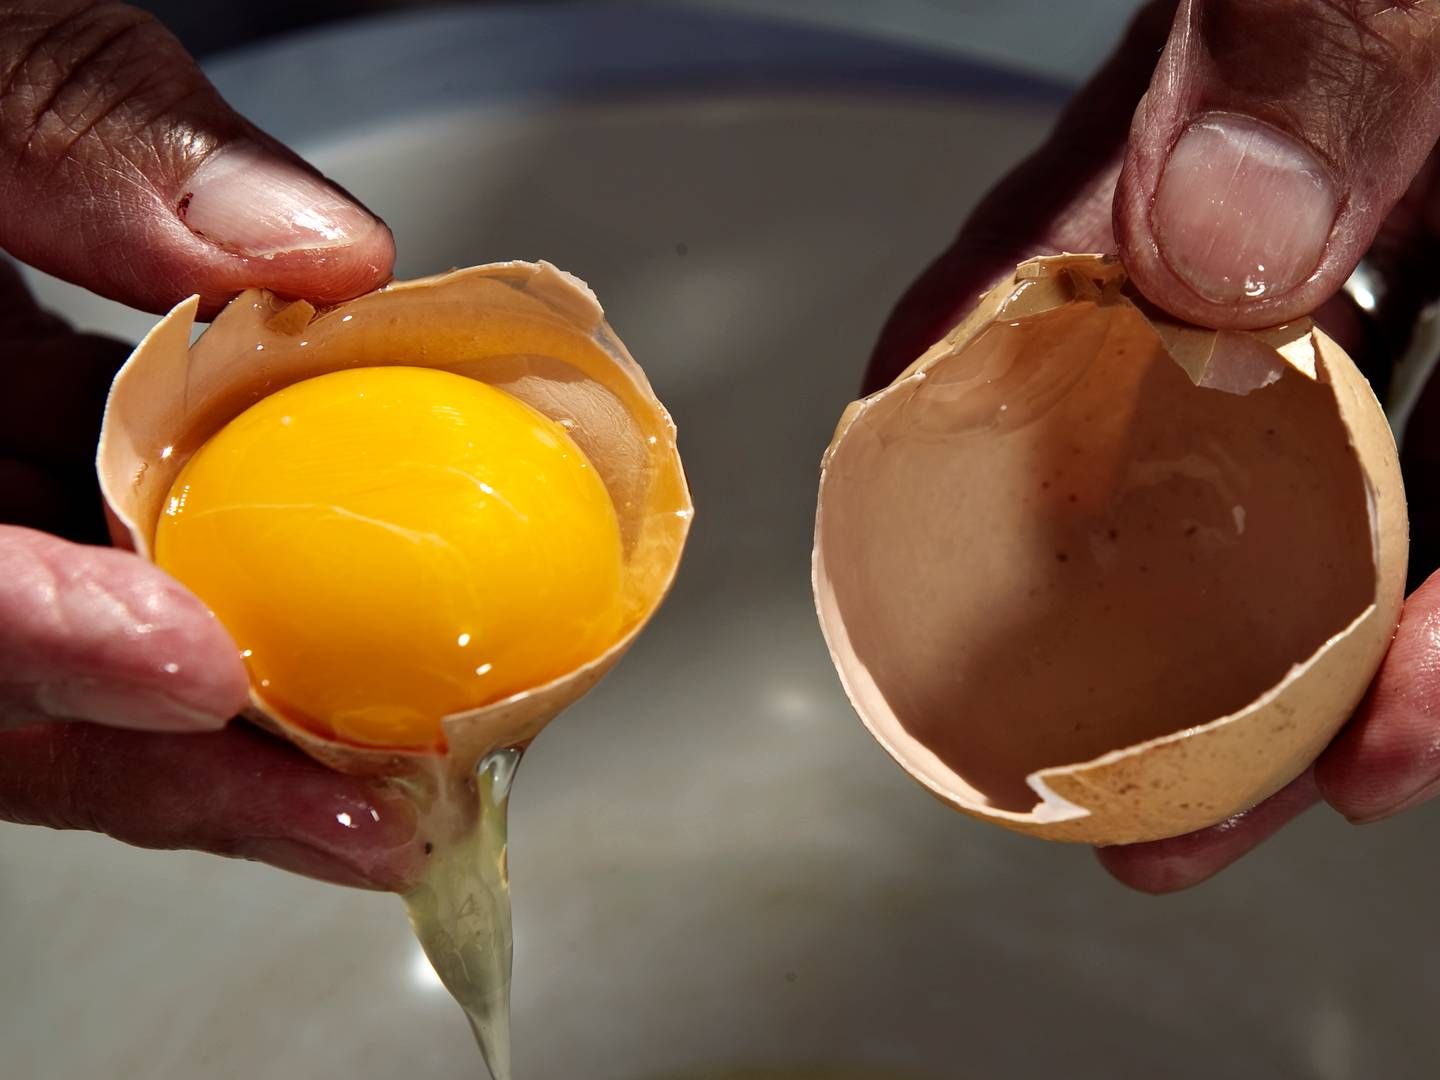 I en enkelt prøve fra æg blev der fundet rester af et fodertilsætningsstof. | Foto: Jacob Ehrbahn/Ritzau Scanpix.